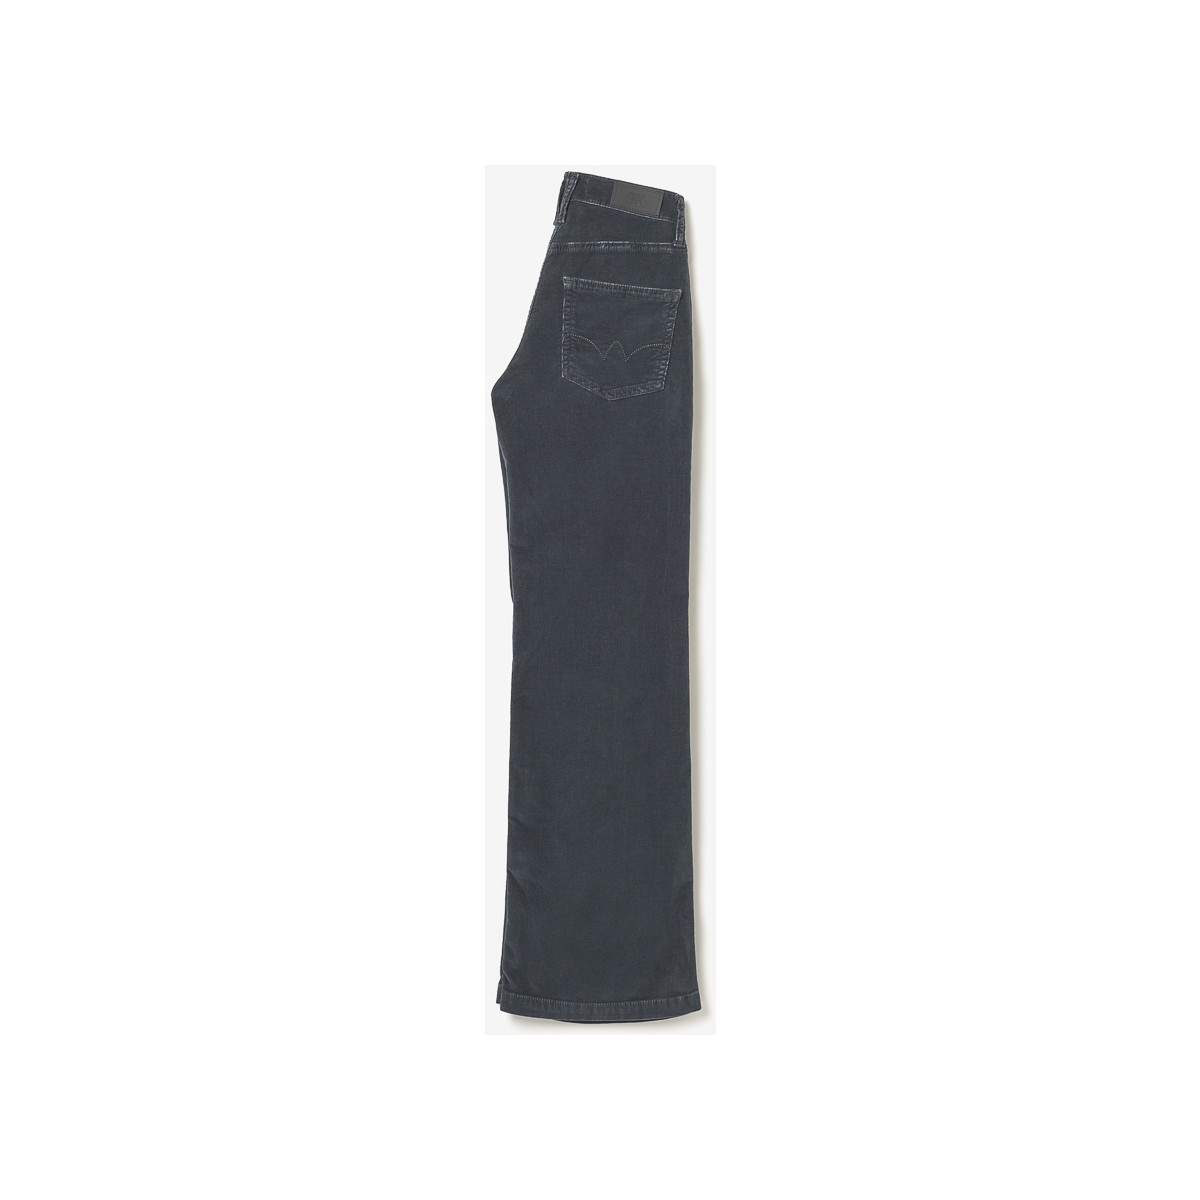 Le Temps des Cerises Gris Flare jeans velours anthracite P9cL7471